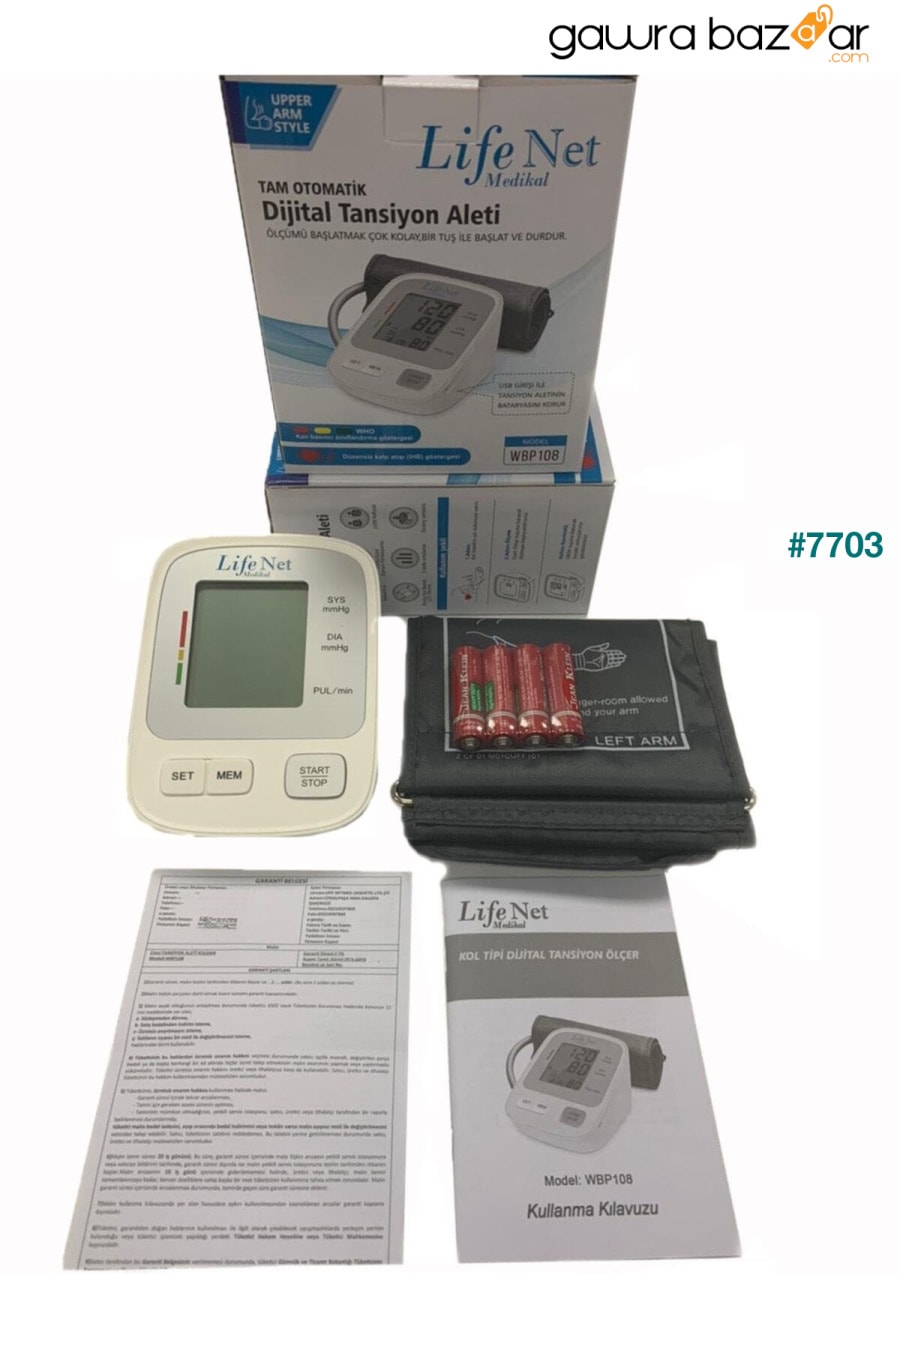 جهاز مراقبة ضغط الدم ، جهاز مراقبة ضغط الدم في أعلى الذراع ، جهاز مراقبة معدل ضربات القلب ، Wbp-108 مع مدخل USB. Life Net Medikal 3